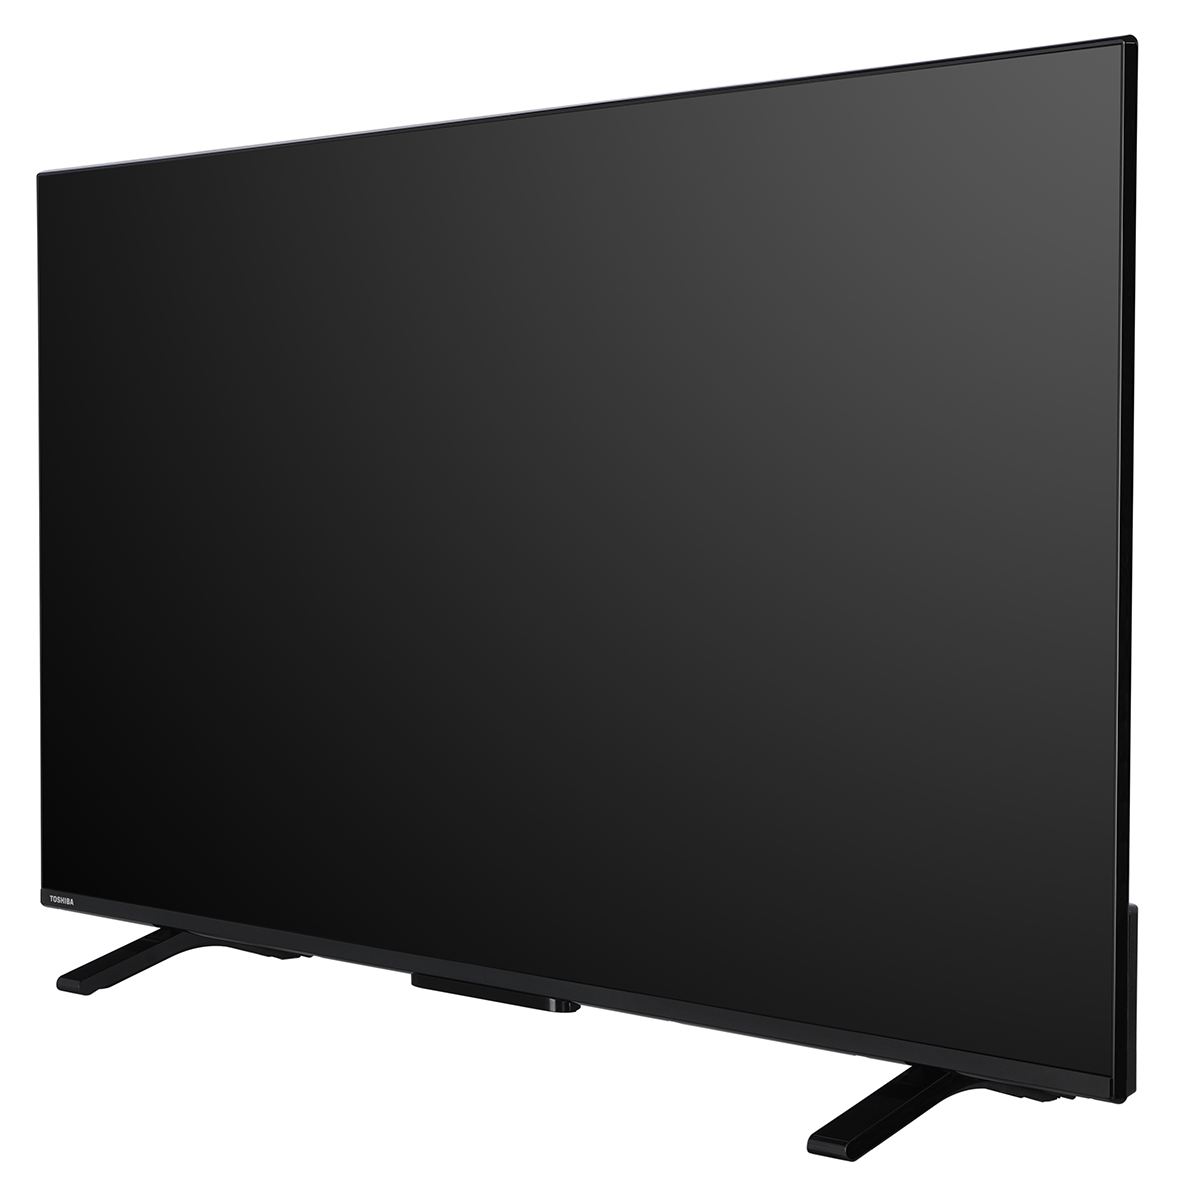 TV LED 55UA2363DG, UHD, Android slika proizvoda Front View 2 L